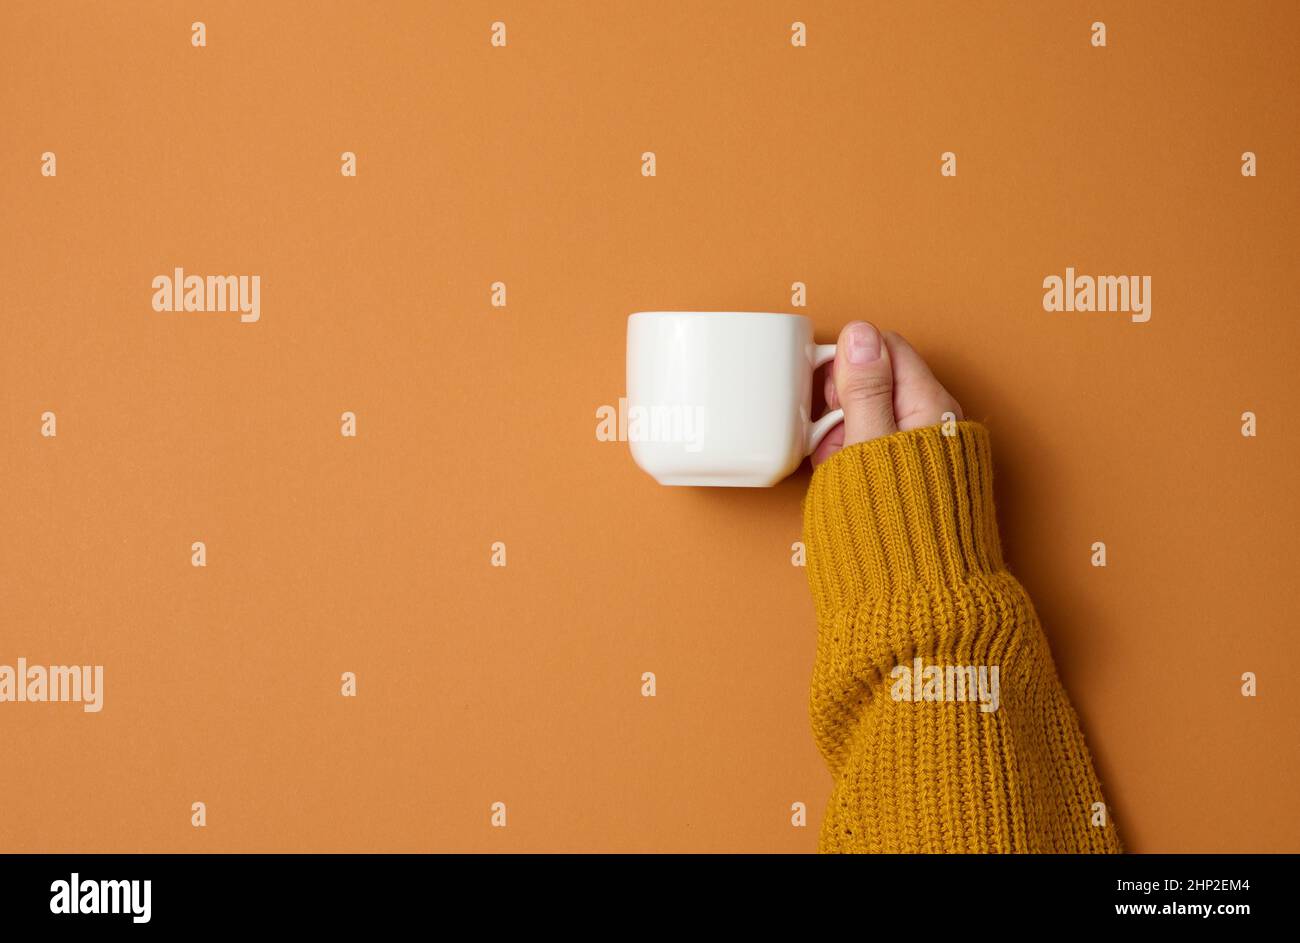 tazza in ceramica bianca in una mano femmina su sfondo arancione, bevanda e mano sono alzate, pausa caffè Foto Stock